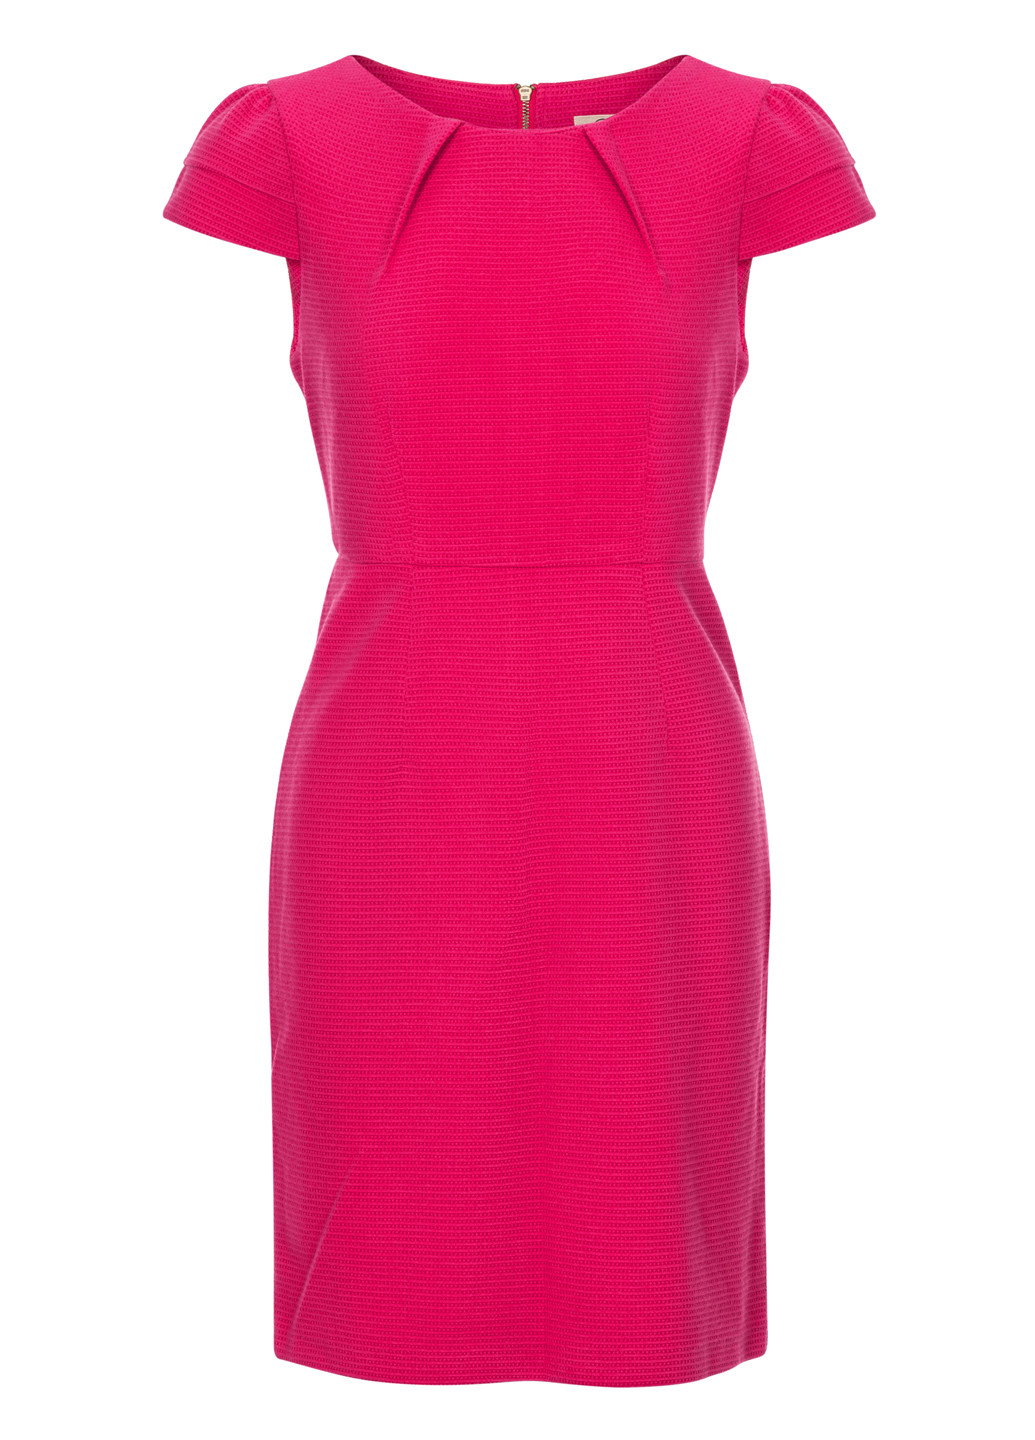 Малиновое коктейльное мини платье с короткими рукавами футляр Darling однотонное